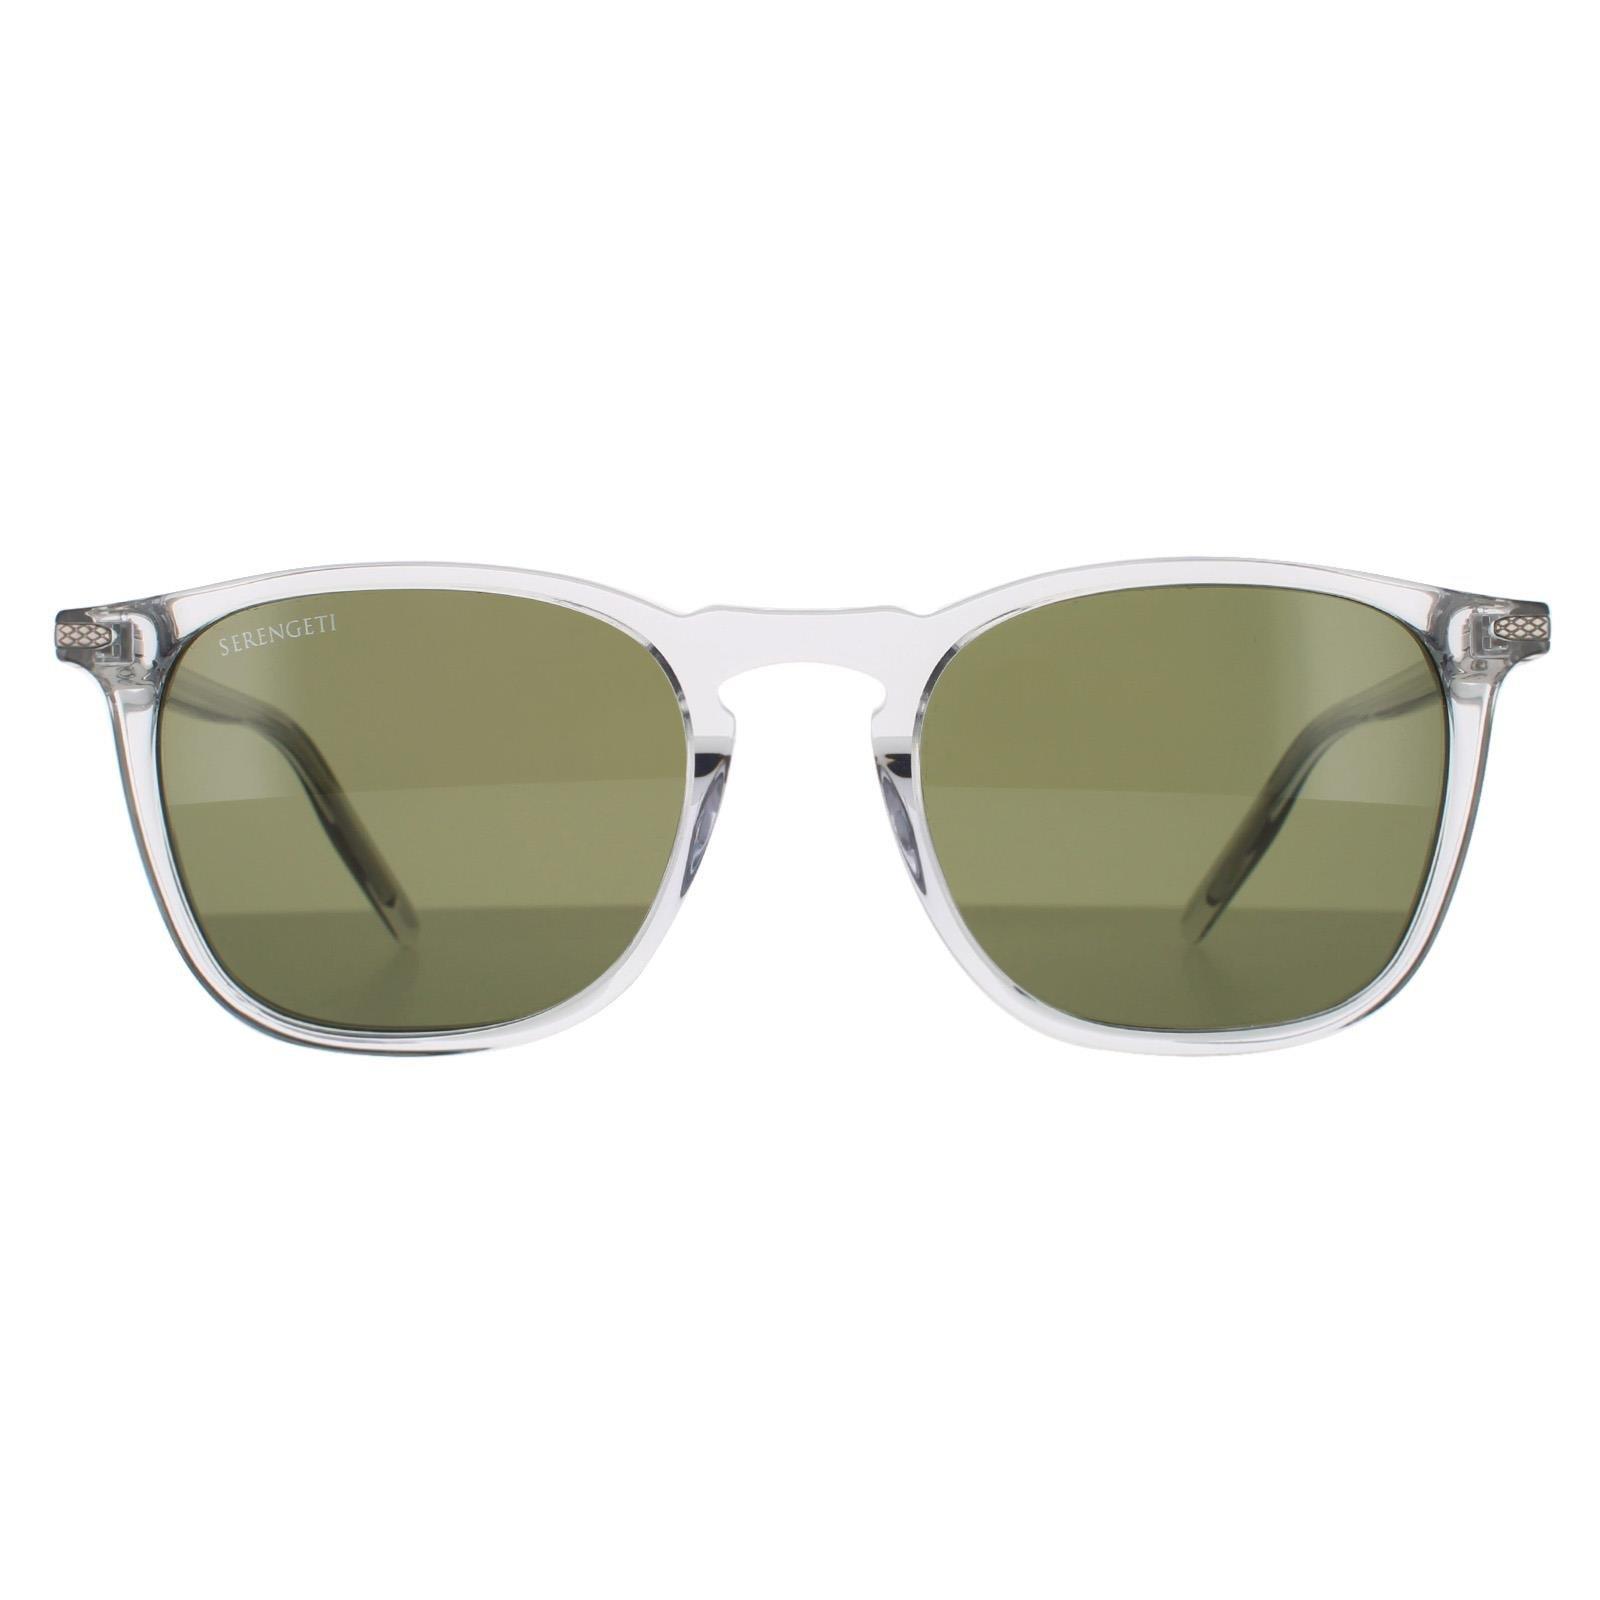 Квадратные блестящие кристально-зеленые поляризованные солнцезащитные очки 555 нм Serengeti, прозрачный